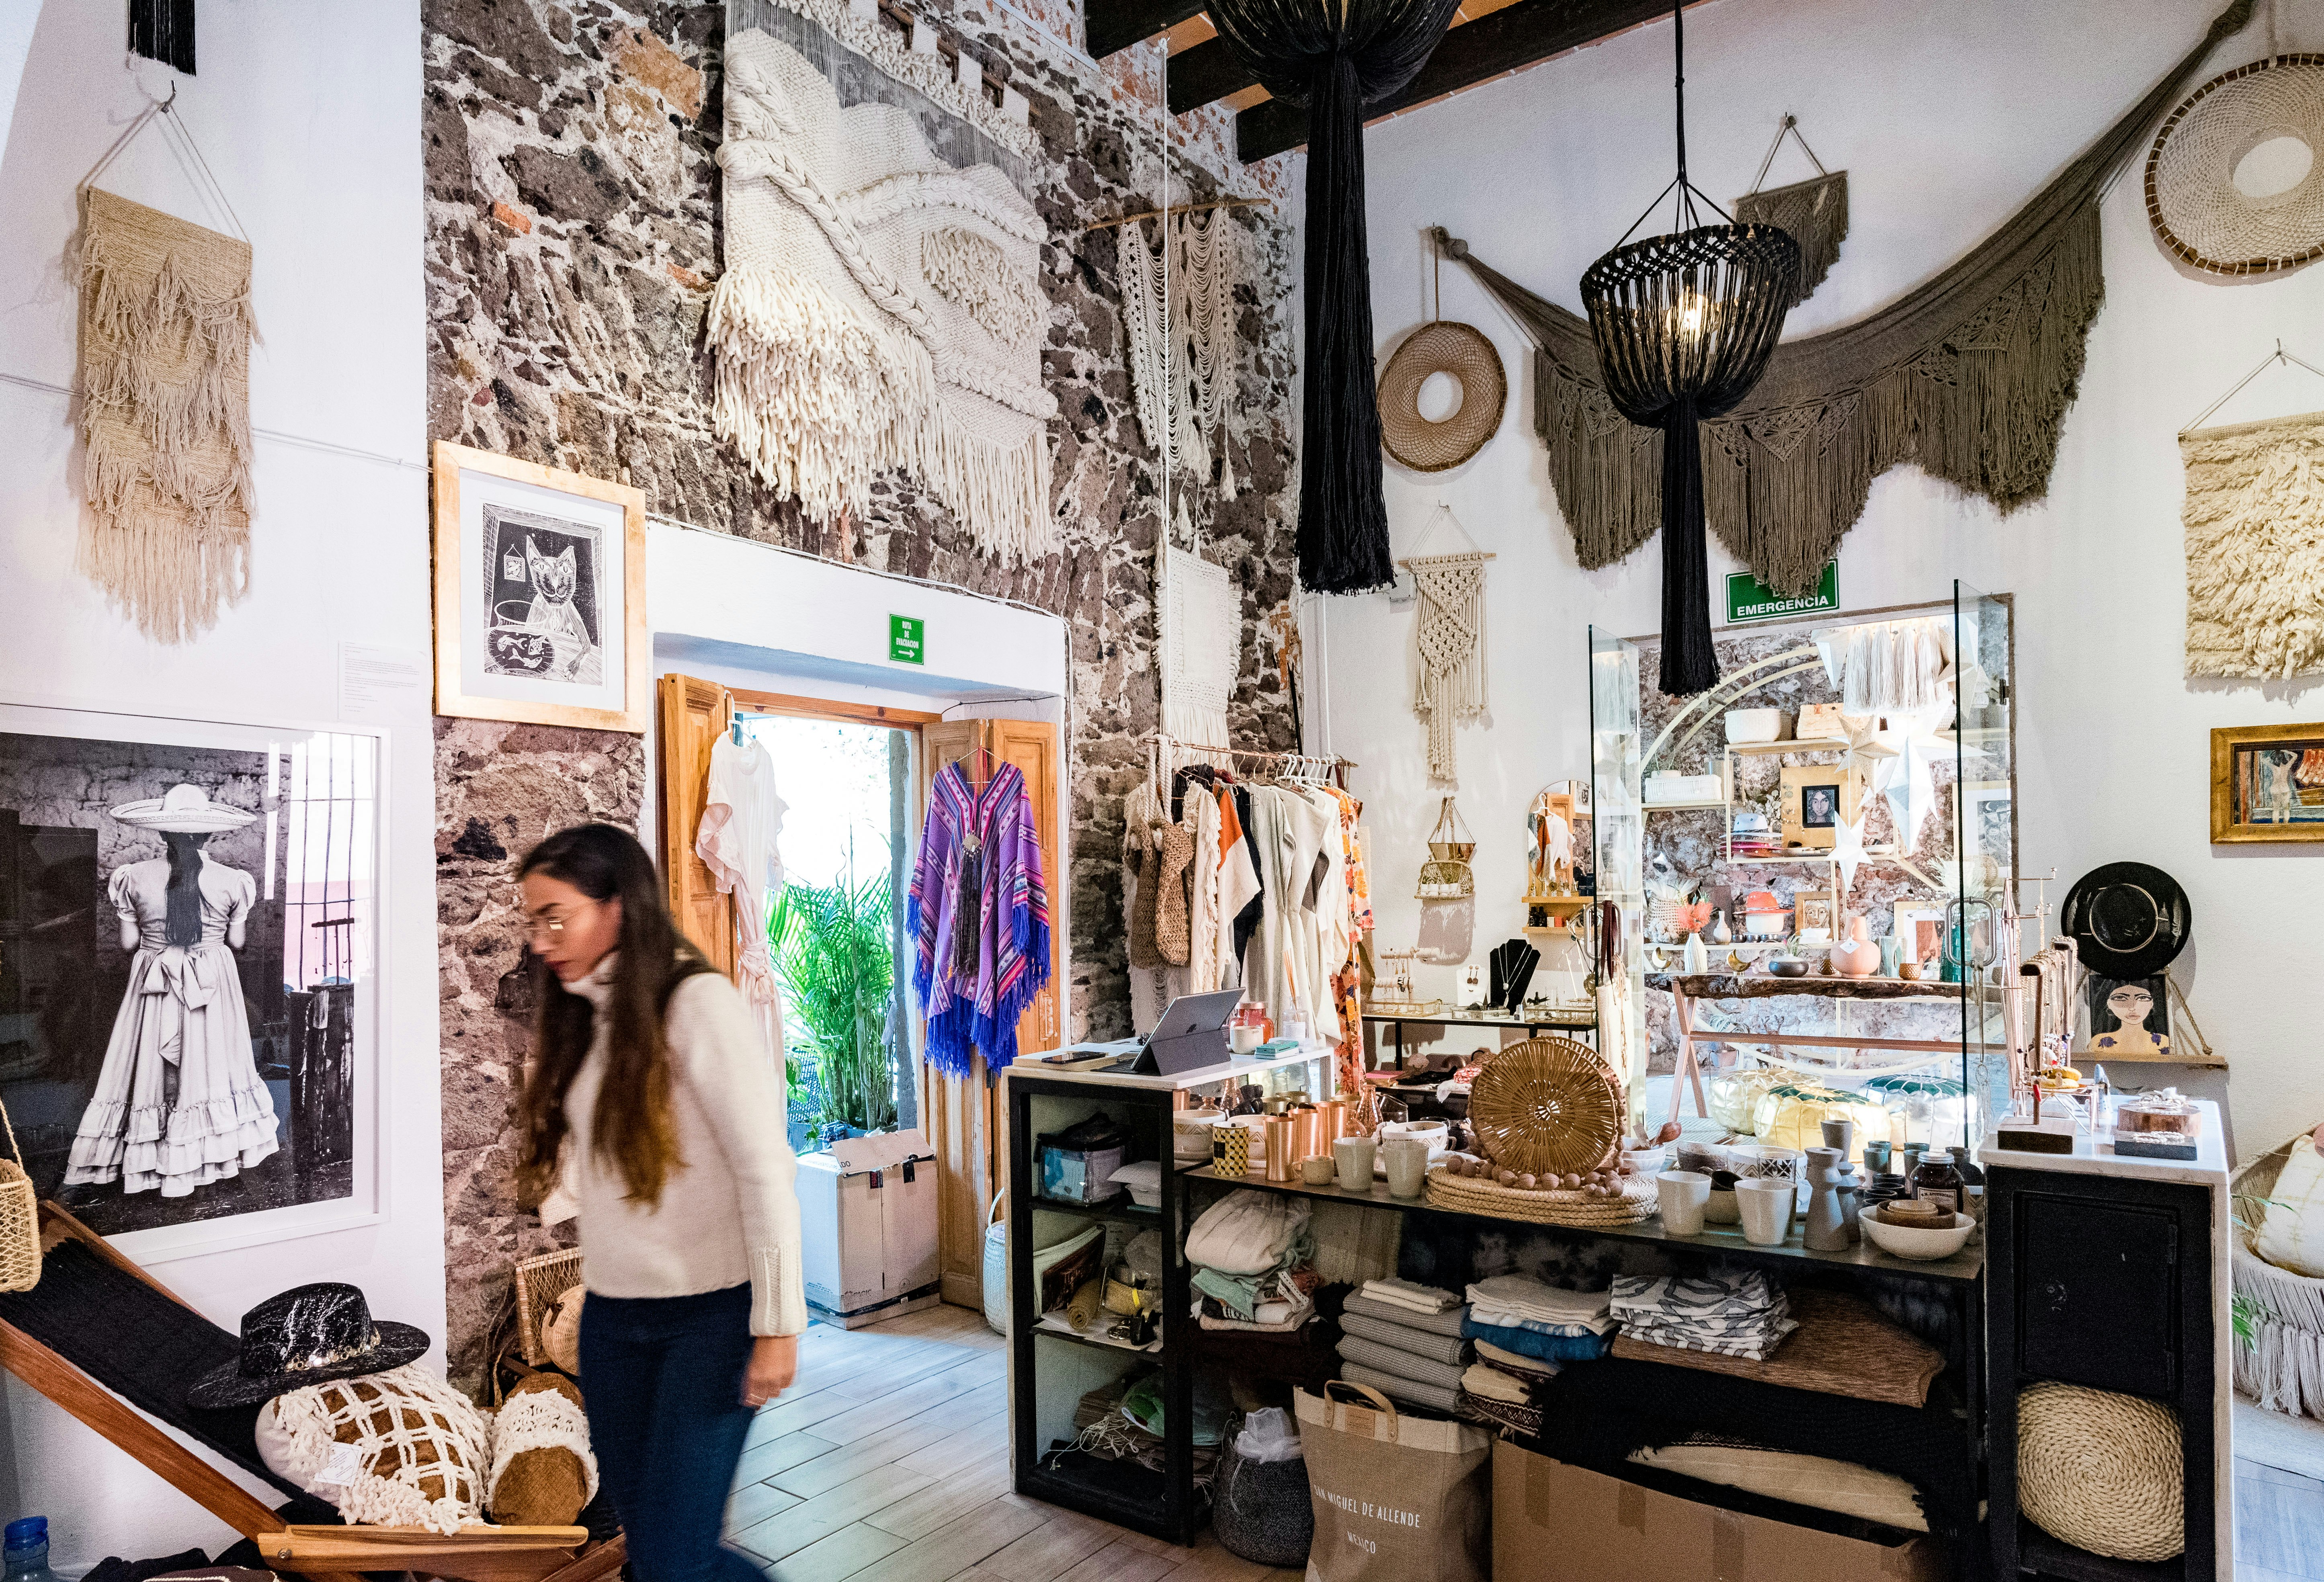 En kvinna med långt brunt hår, iklädd en krämfärgad tröja och jeans, går genom interiören av Mercado Collective, en inredningsbutik vars sten och vitkalkade väggar är täckta av hängande tyger, med ställ med kläder och smycken synliga i bakgrund